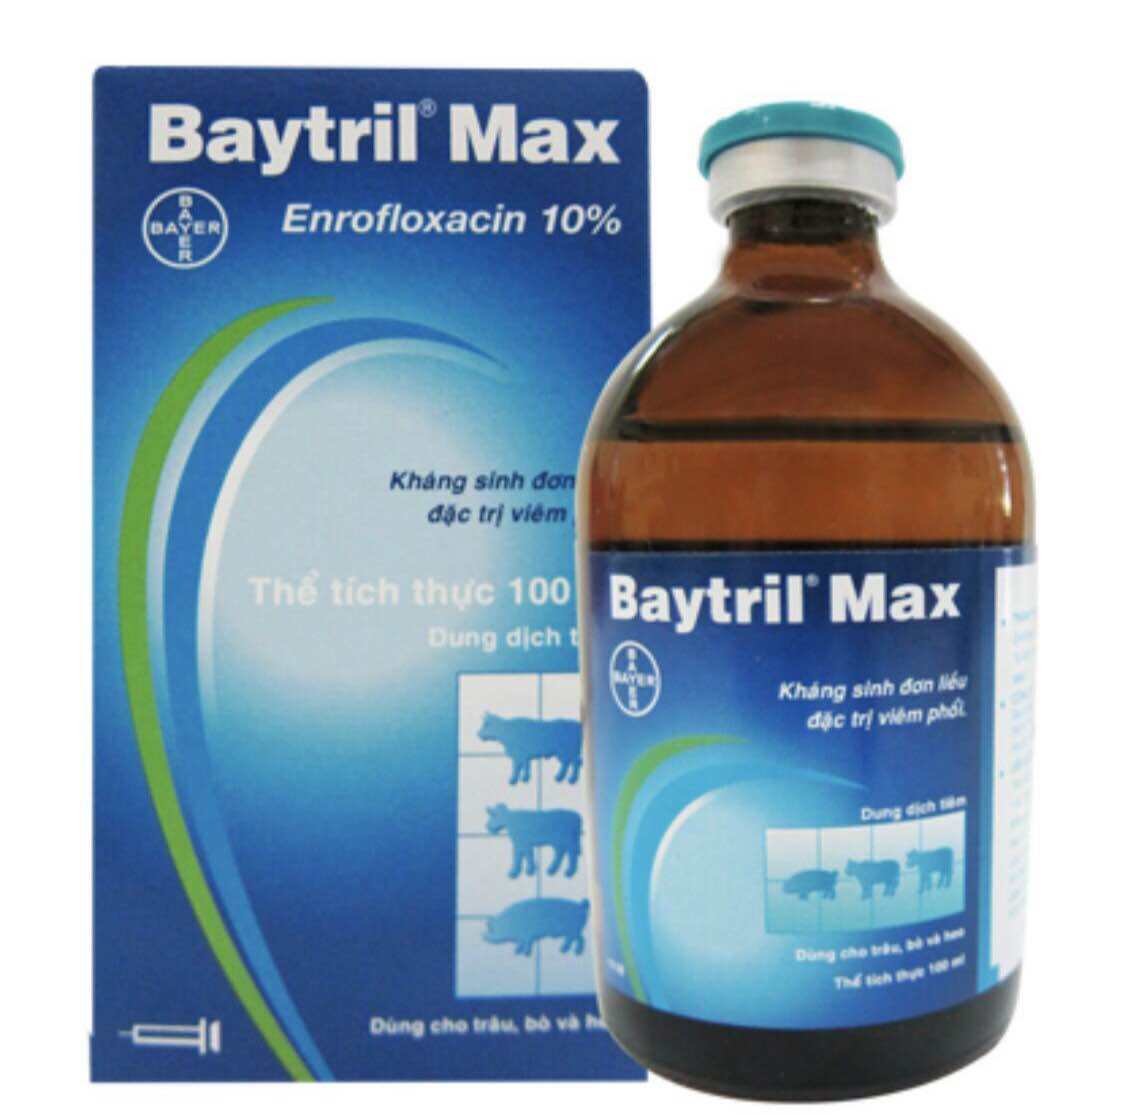 Baytril Max 10% chiếc lẻ 10ml đặt trị viêm phổi tiêu chảy kéo dài dùng cho gia súc và gia cầm.